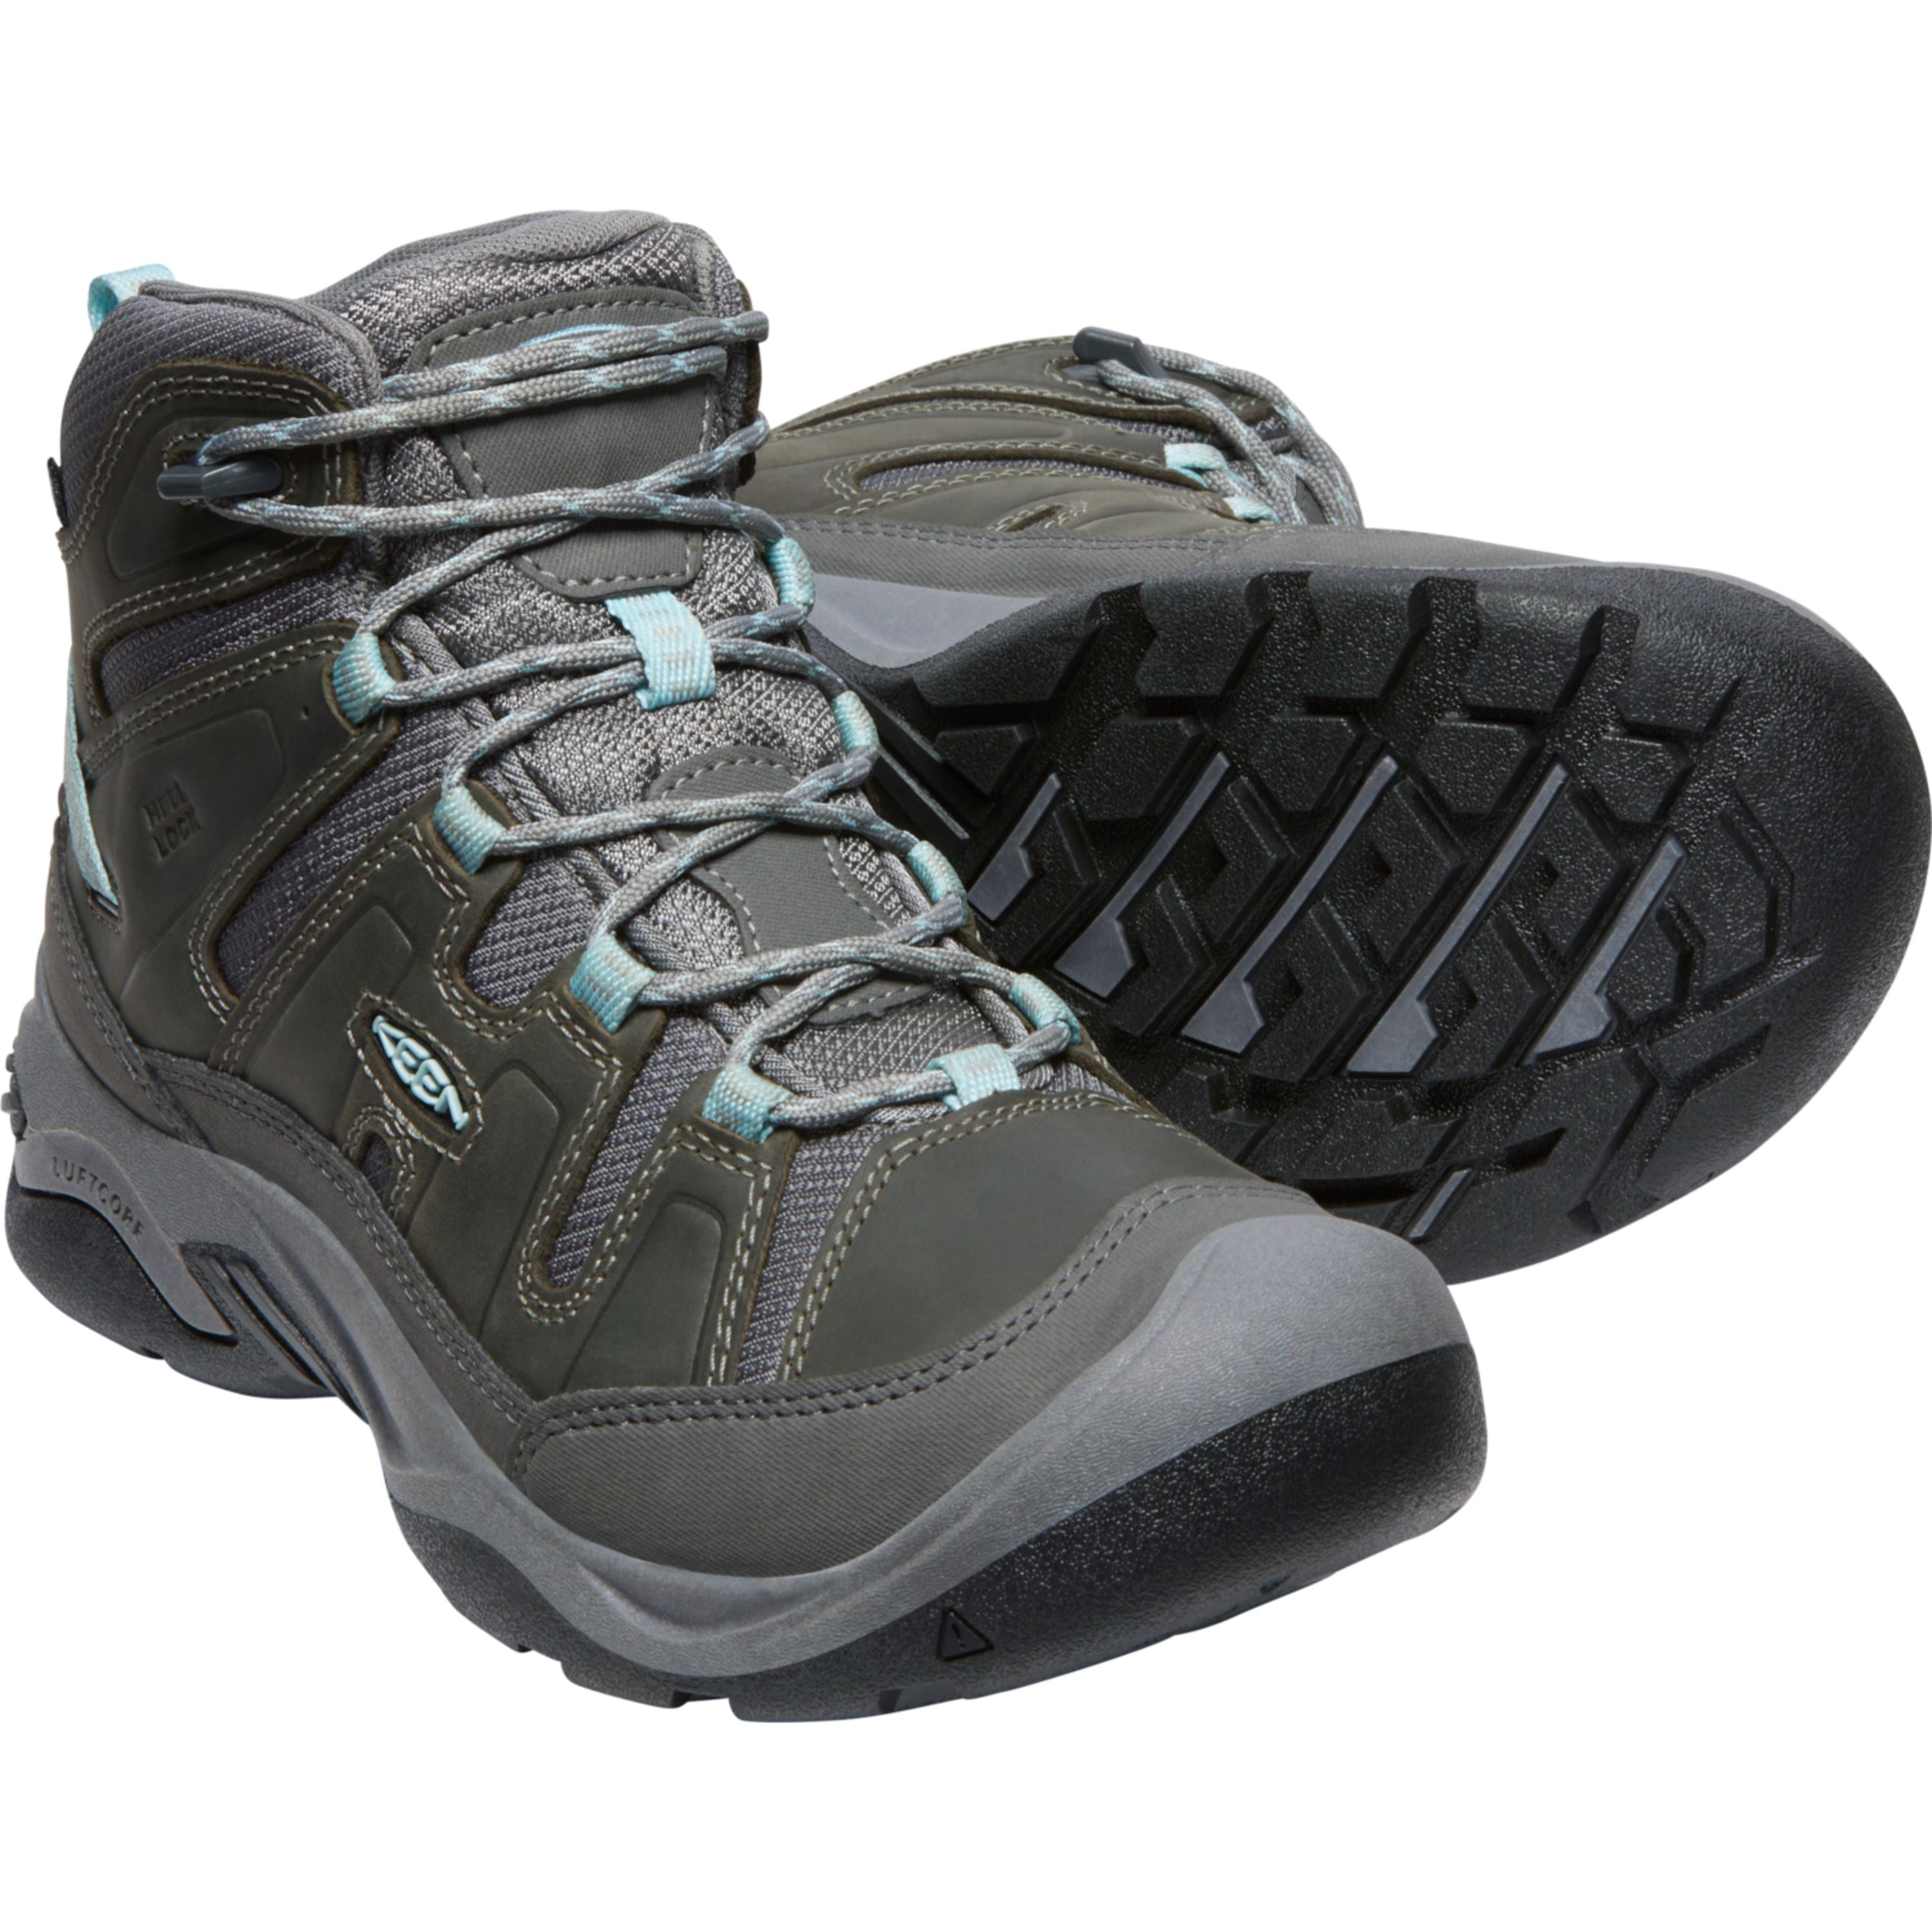 "Circadia III Mid WP" hiking boots - Women's